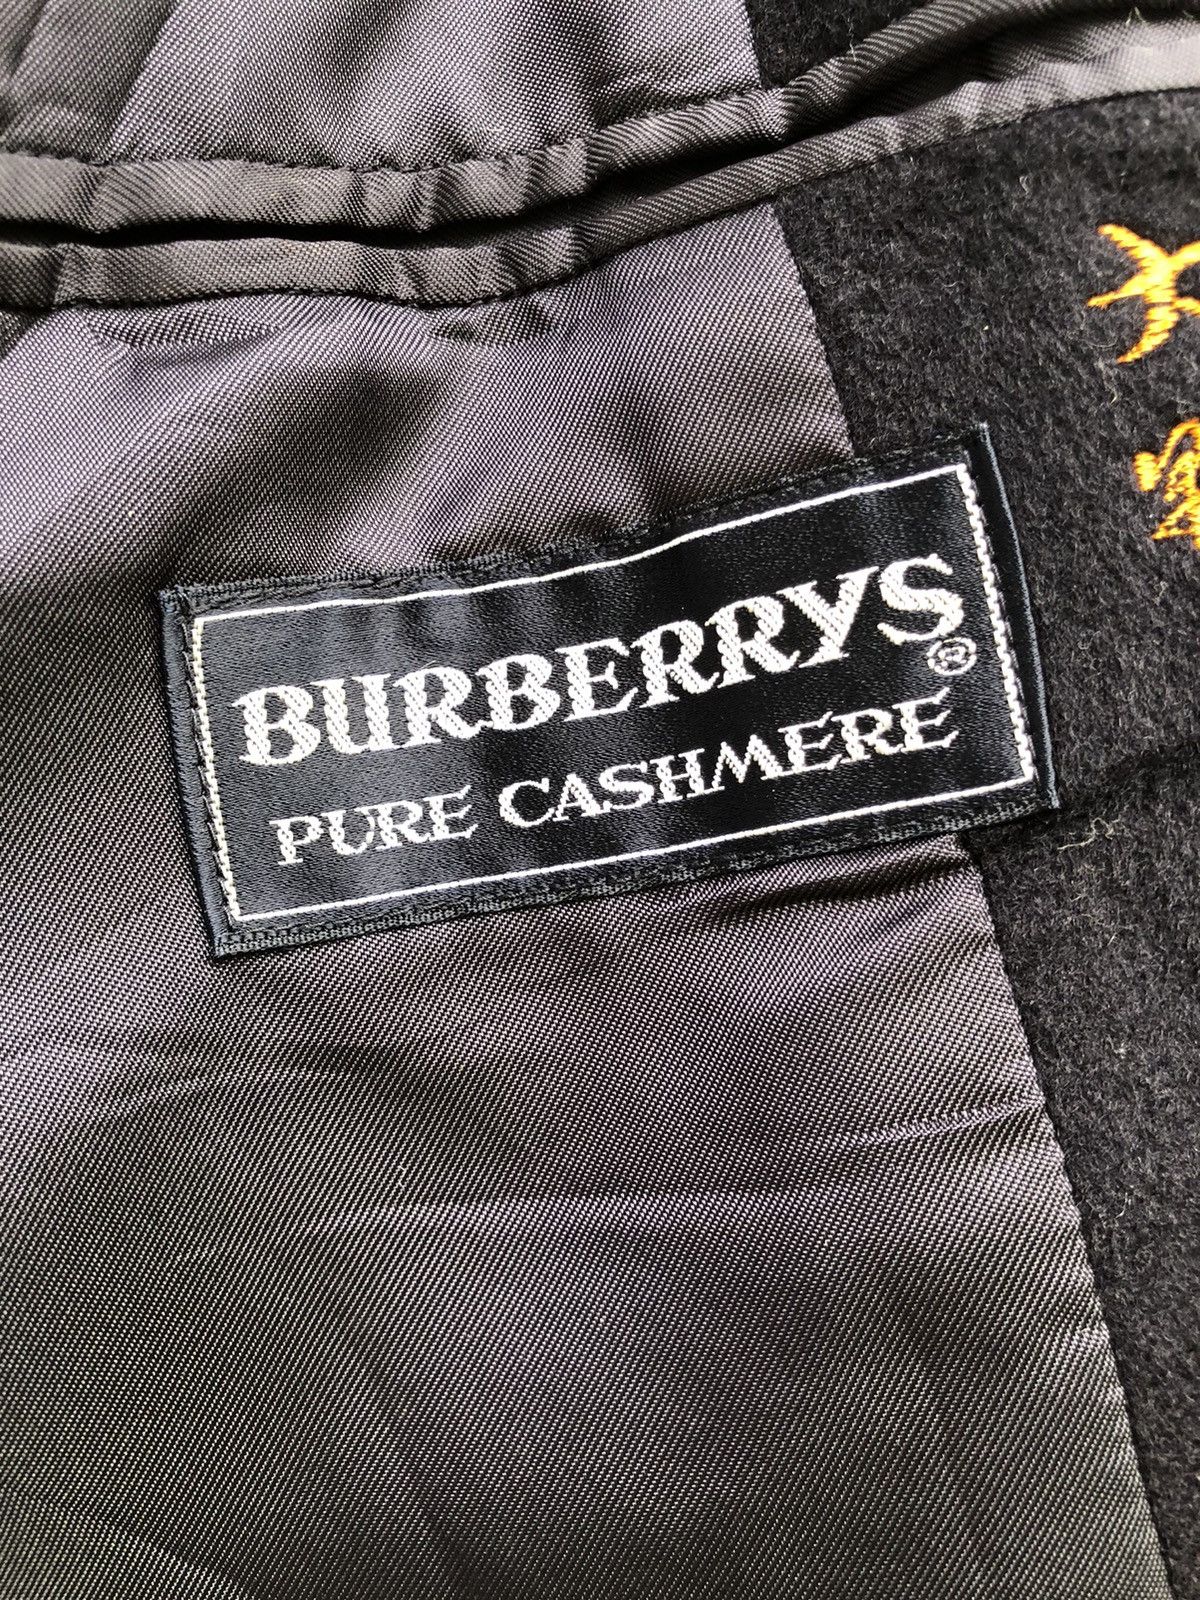 Vintage Burberry Prorsum Double Breast Pure Cashmere Coat - 13